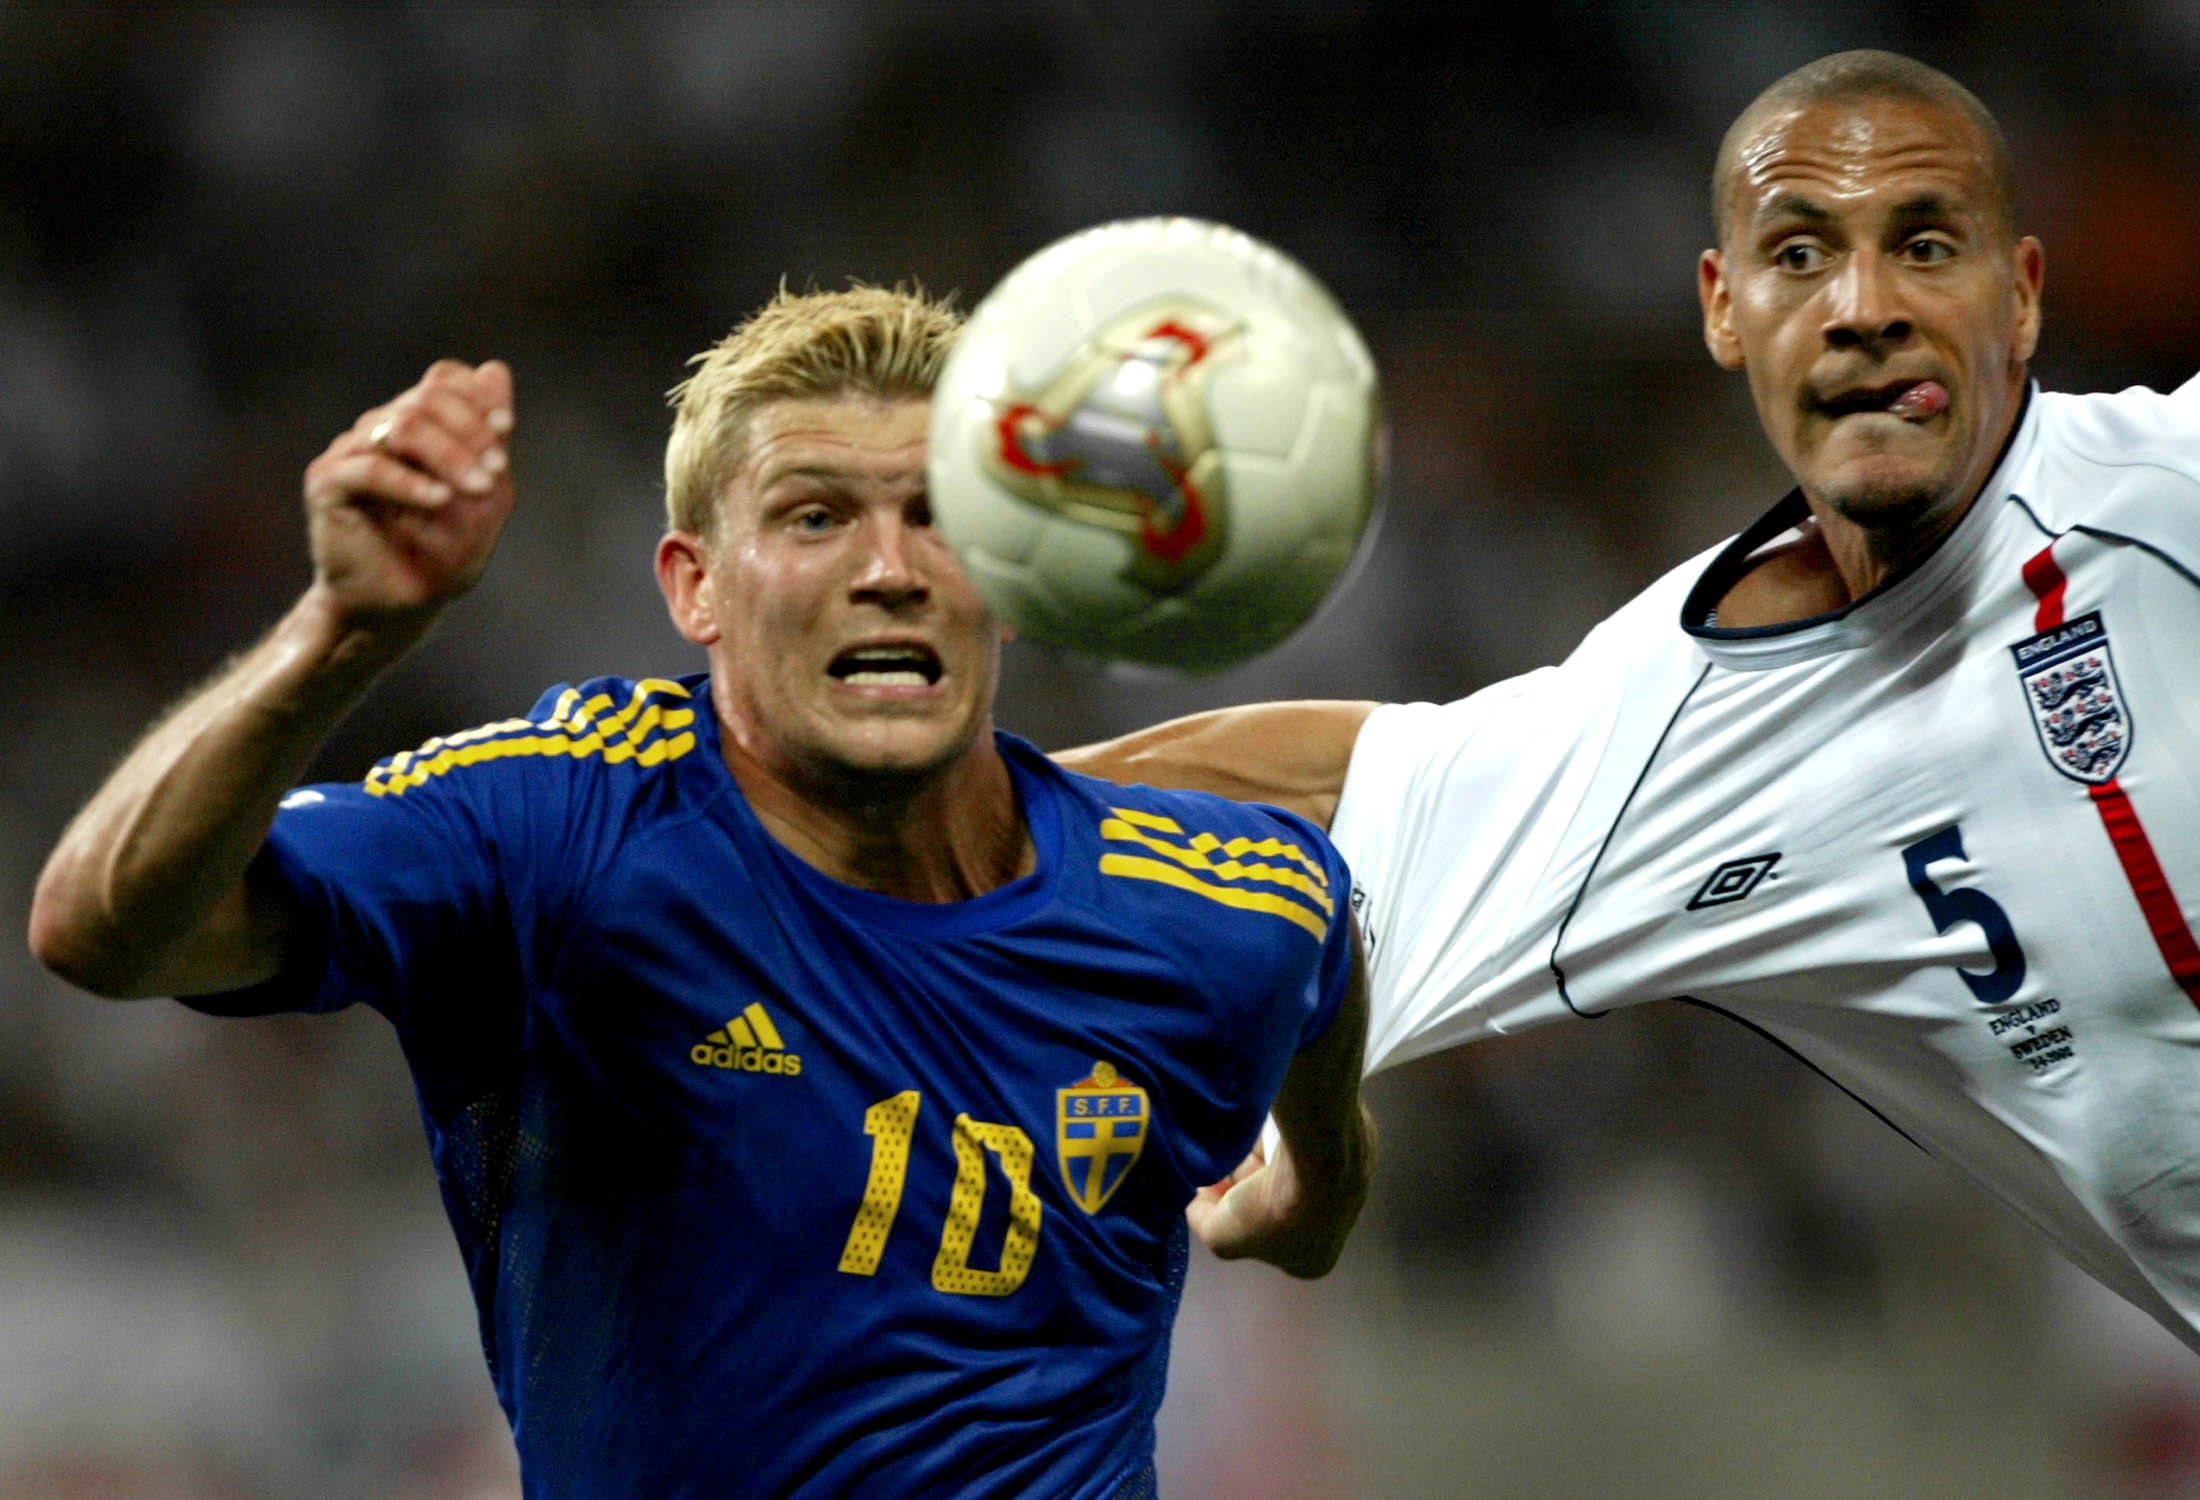 74 landskamper och 30 mål blev det till slut för Allbäck. Här i närkamp med Englands Rio Ferdinand i VM 2002.